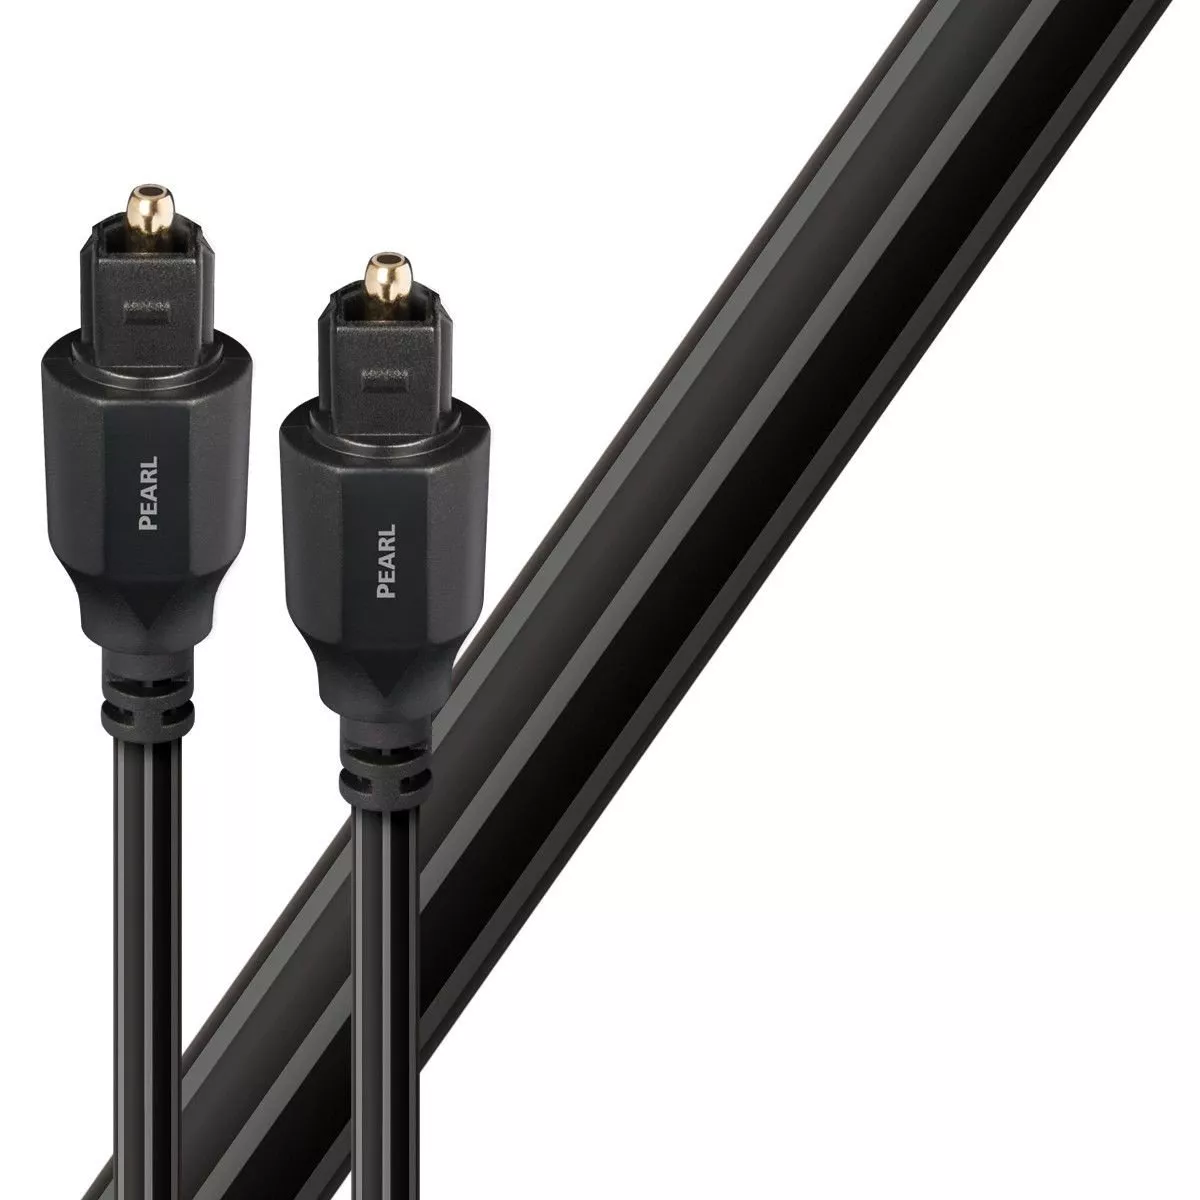 Cablu optic Toslink - Toslink AudioQuest Pearl 1.5 m, [],audioclub.ro